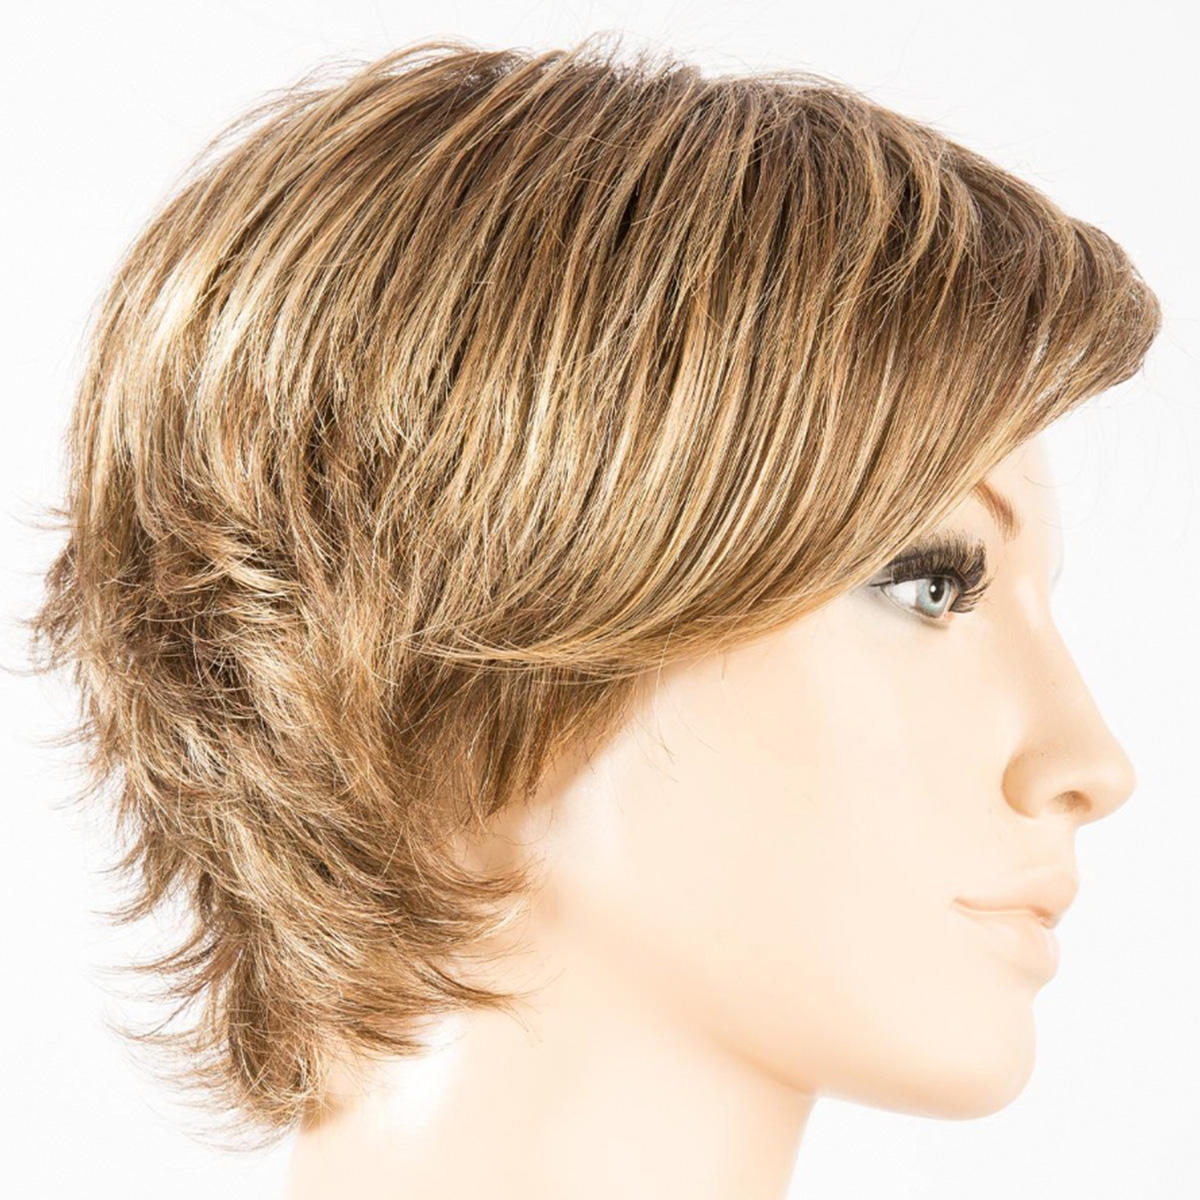 Ellen Wille Perucci Parrucca di capelli sintetici aperta bernstein rooted - 1